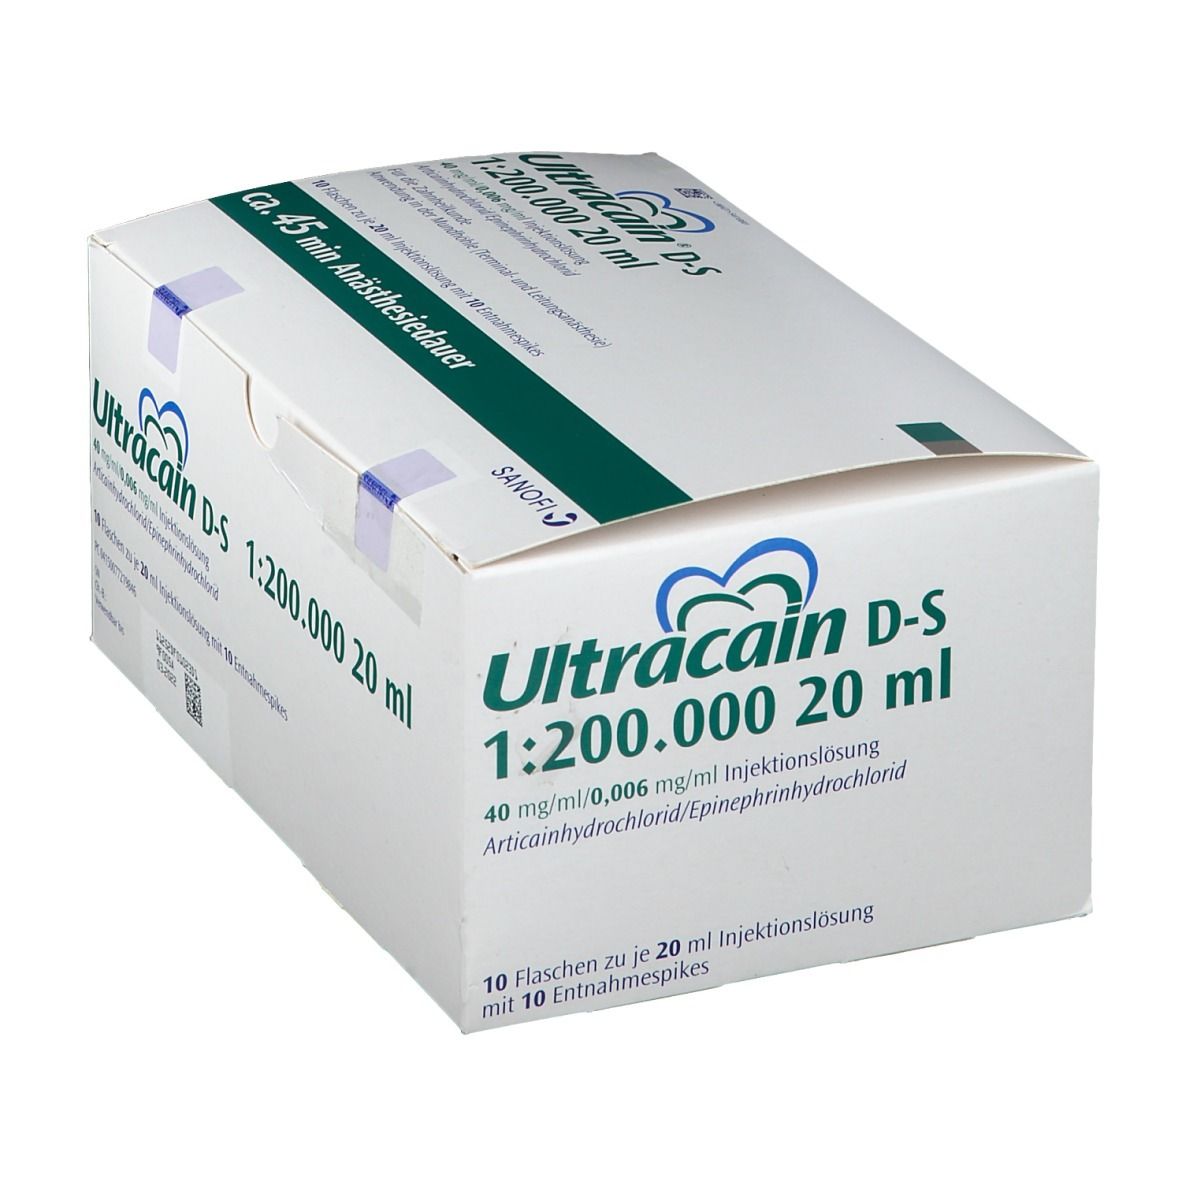 Ultracain® D-S 1:200000 20ml